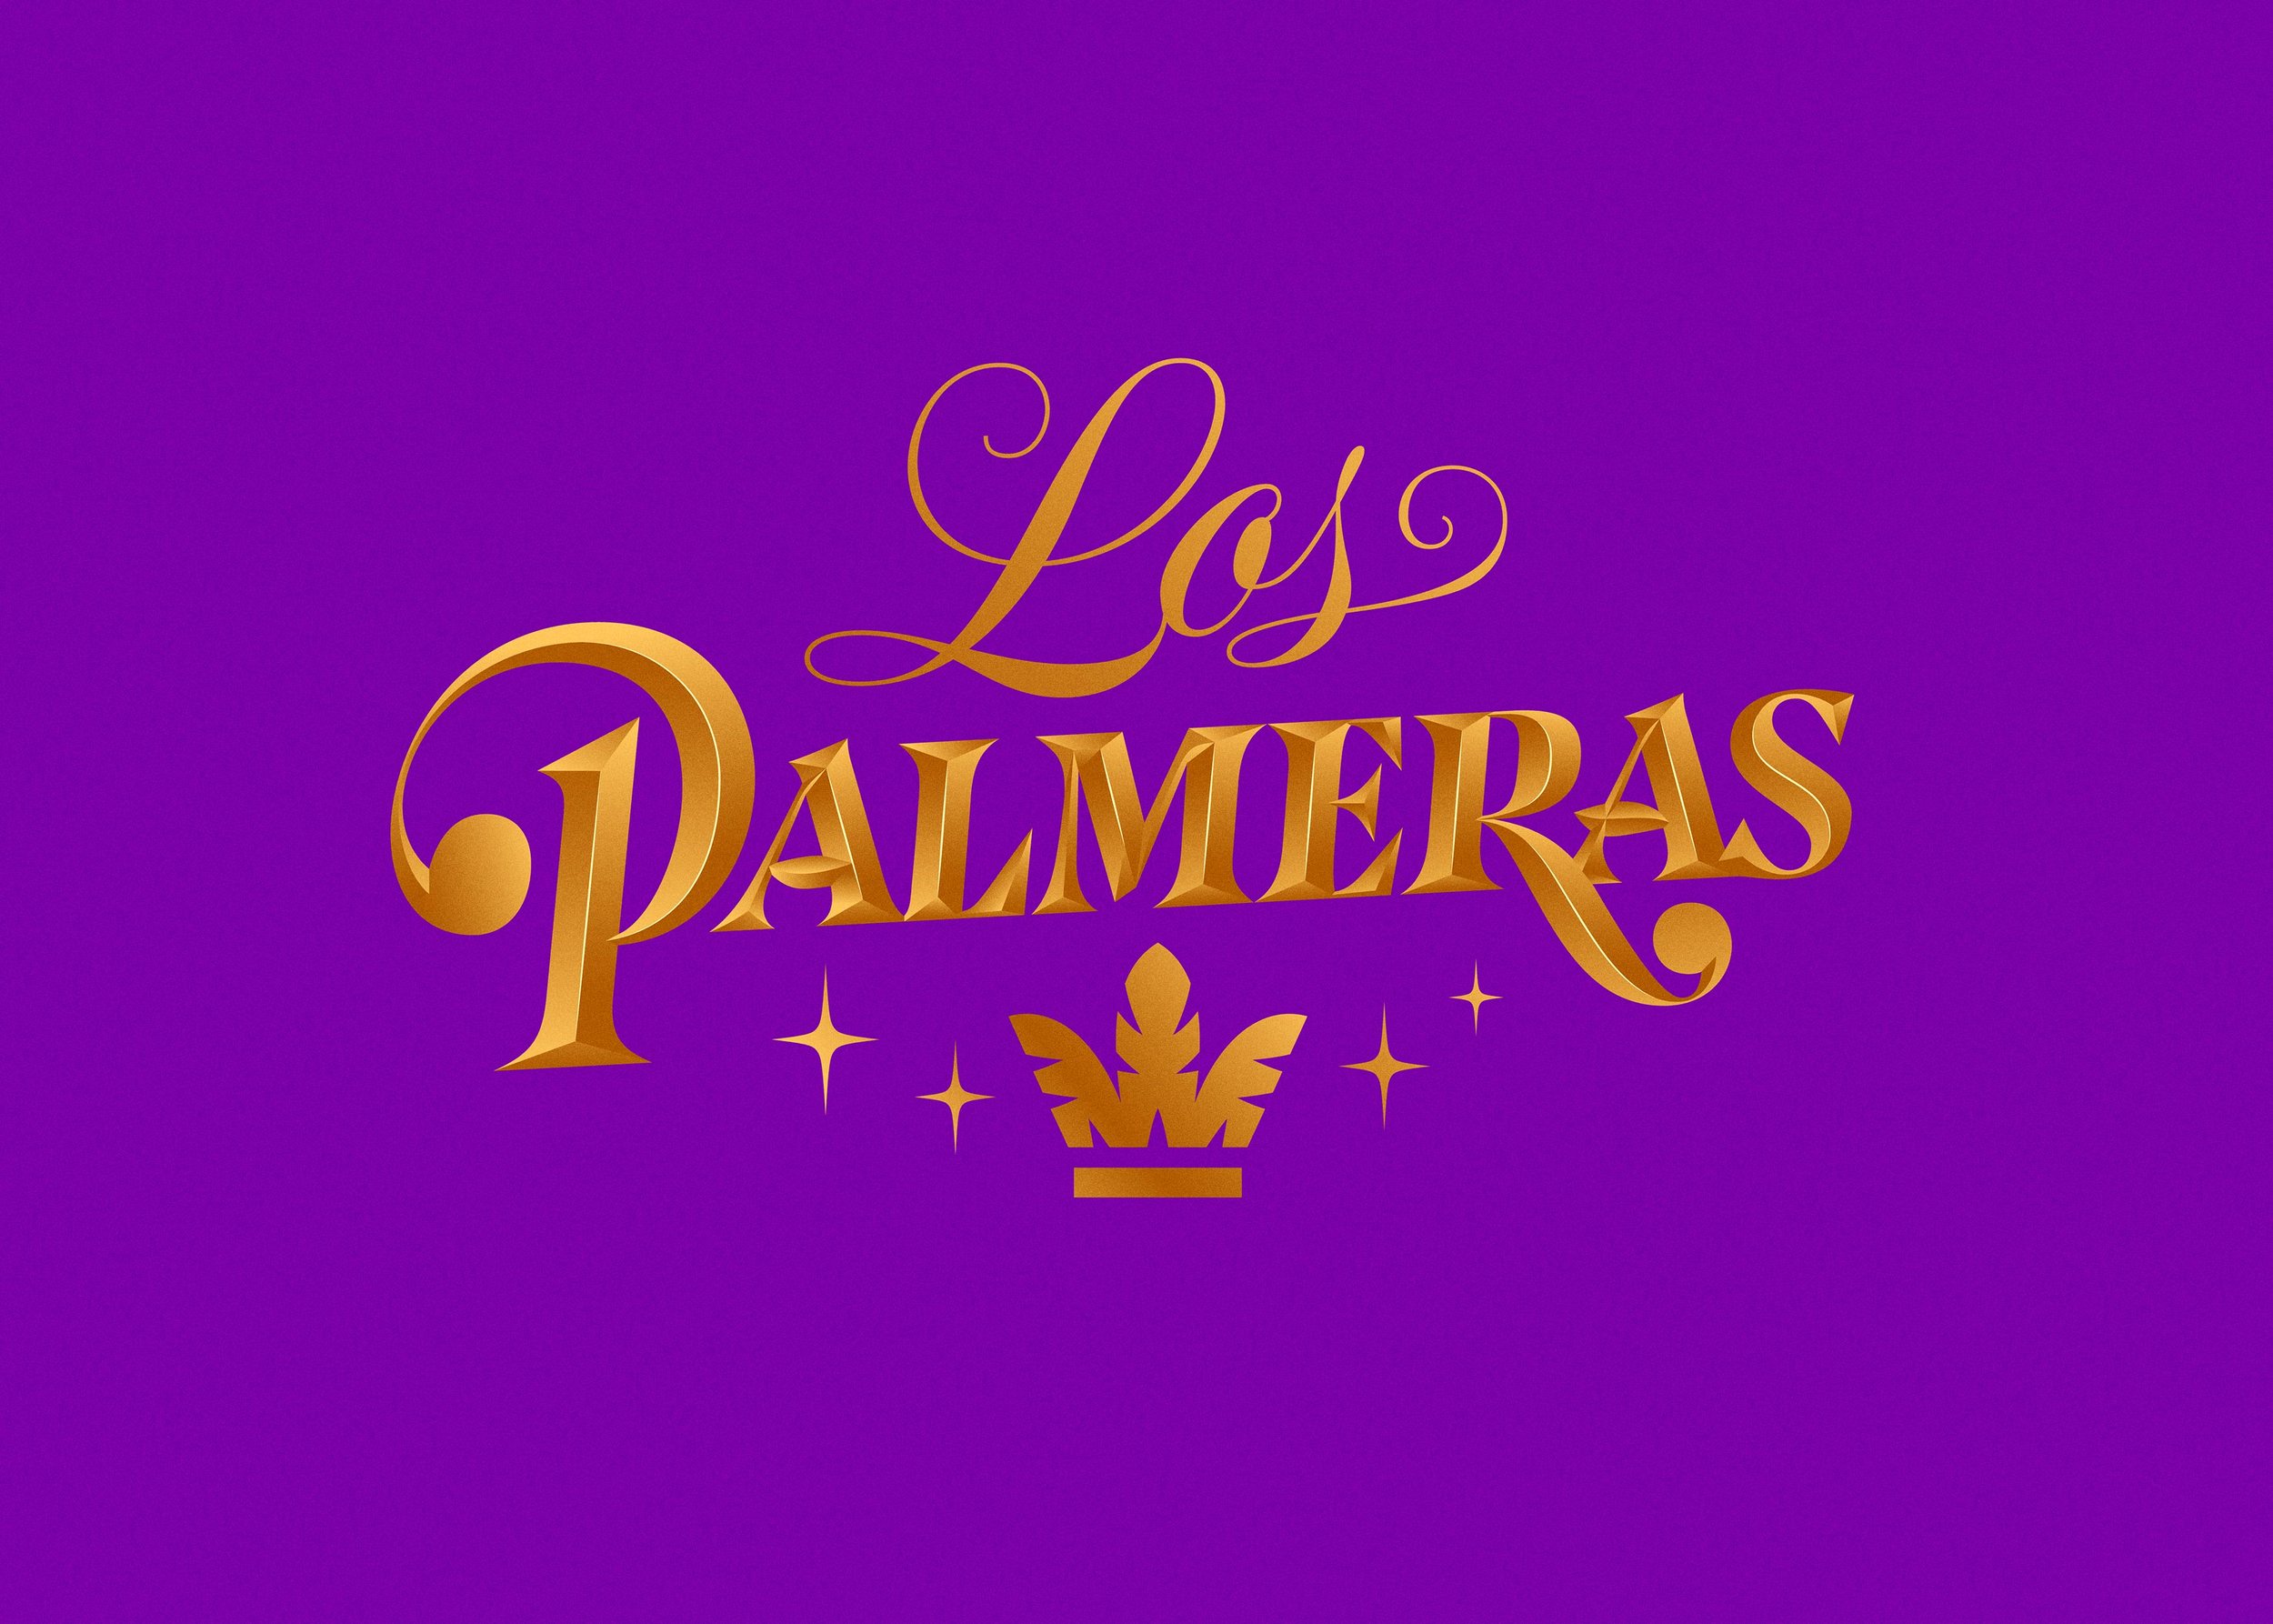 LOS-PALMERAS-ID-2021-para-WEB-A01-18-by-YaniGuille&Co.jpg